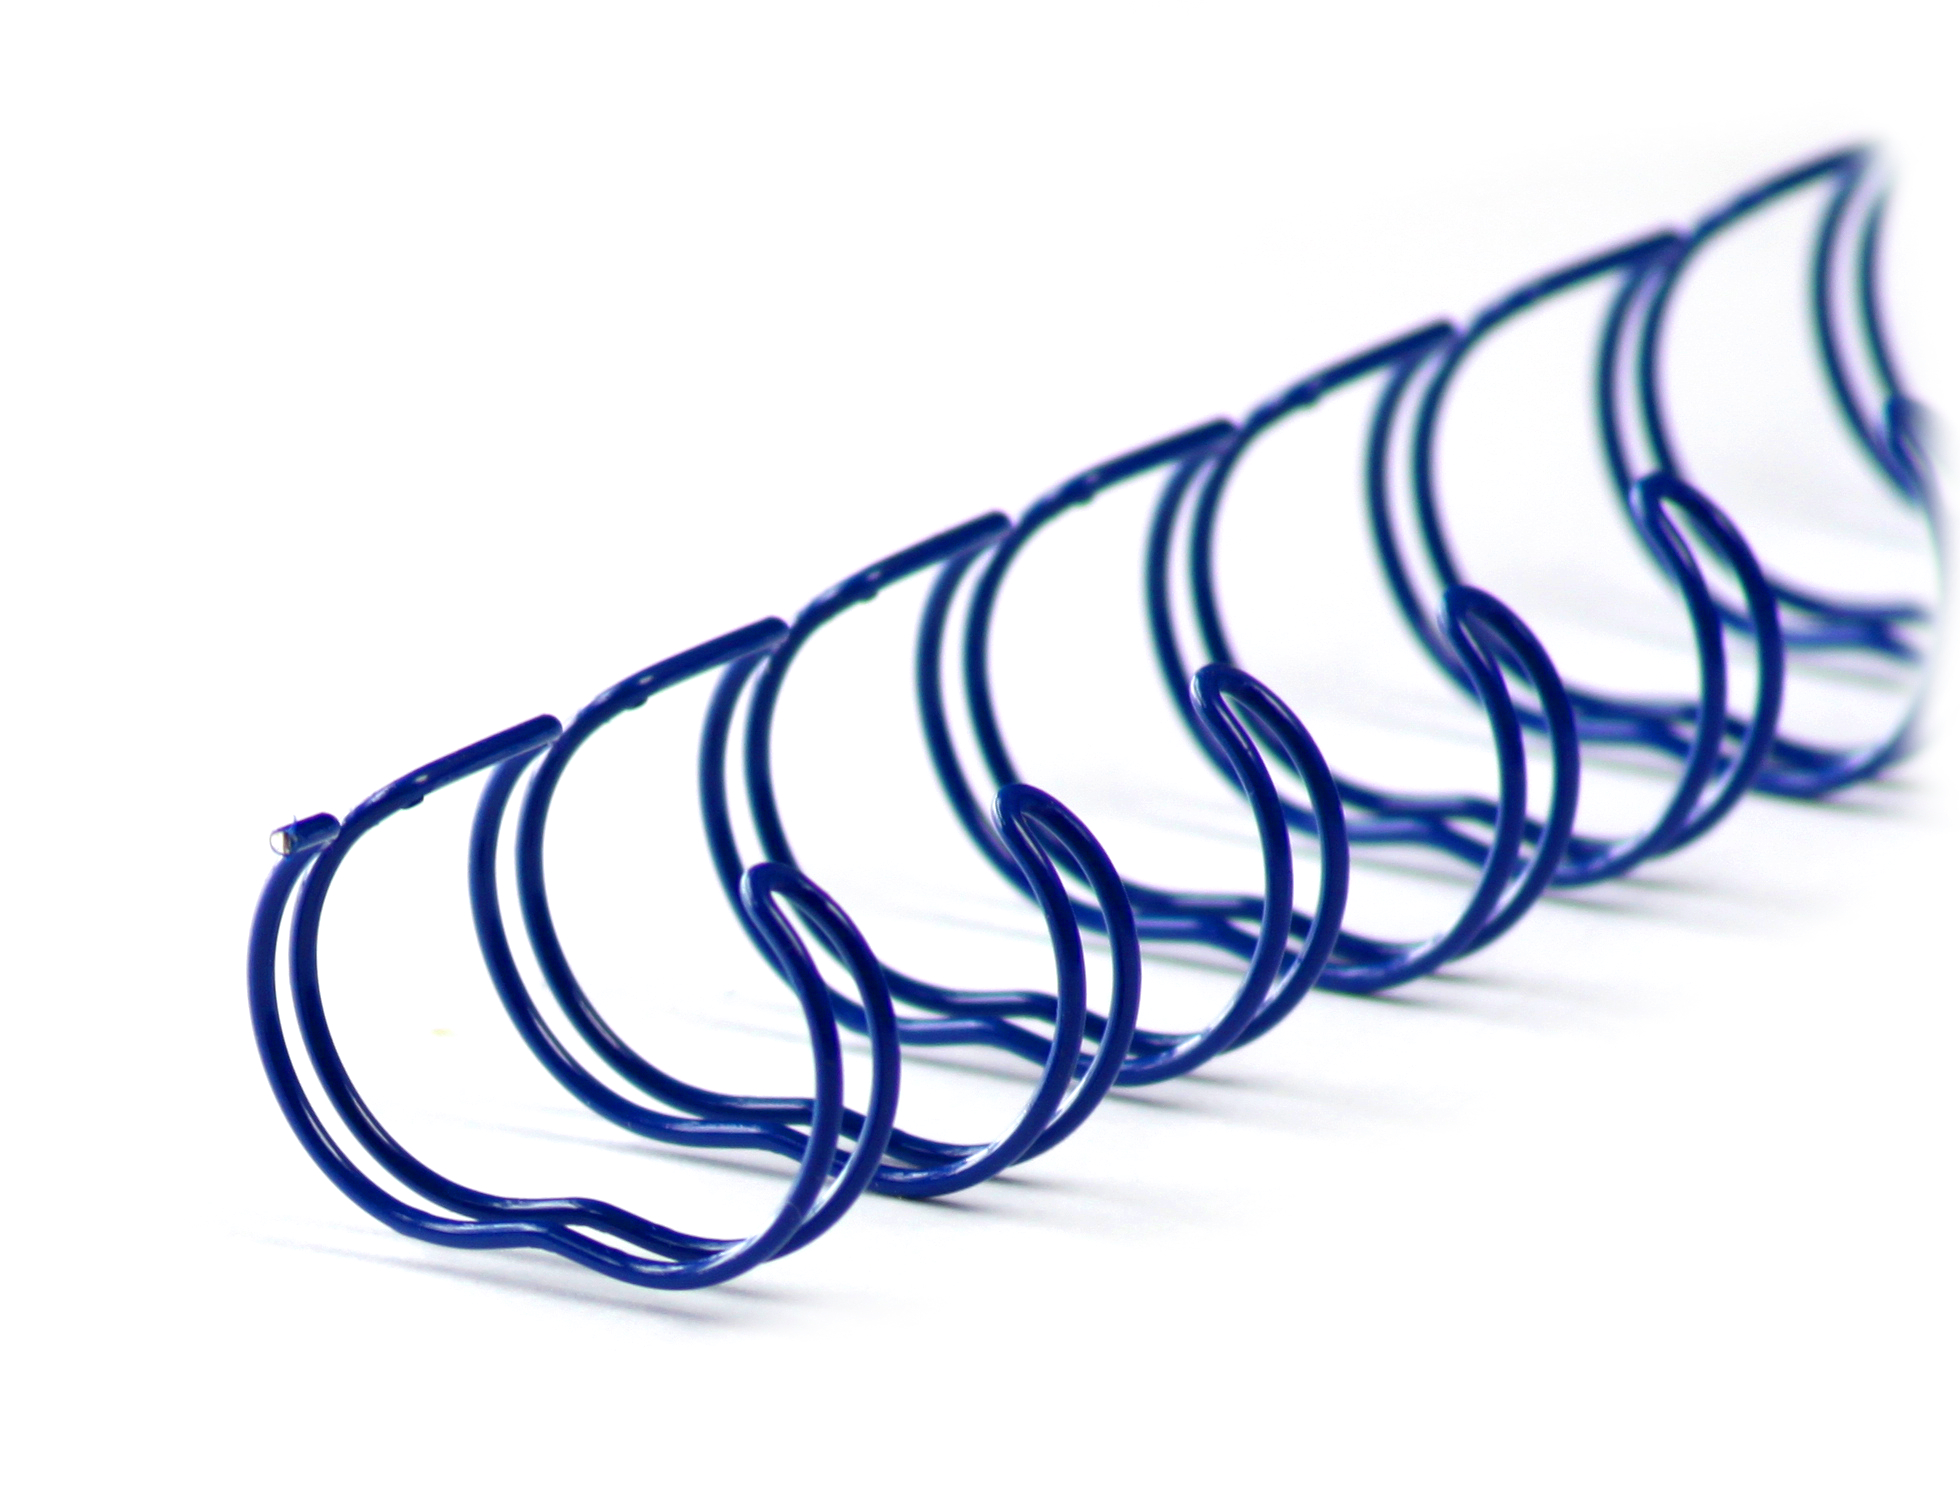 Drahtbinderücken 23 Ringe 12,7mm, 1/2 Zoll, 2:1 Teilung, weiße boxen - blau (100 Stück)